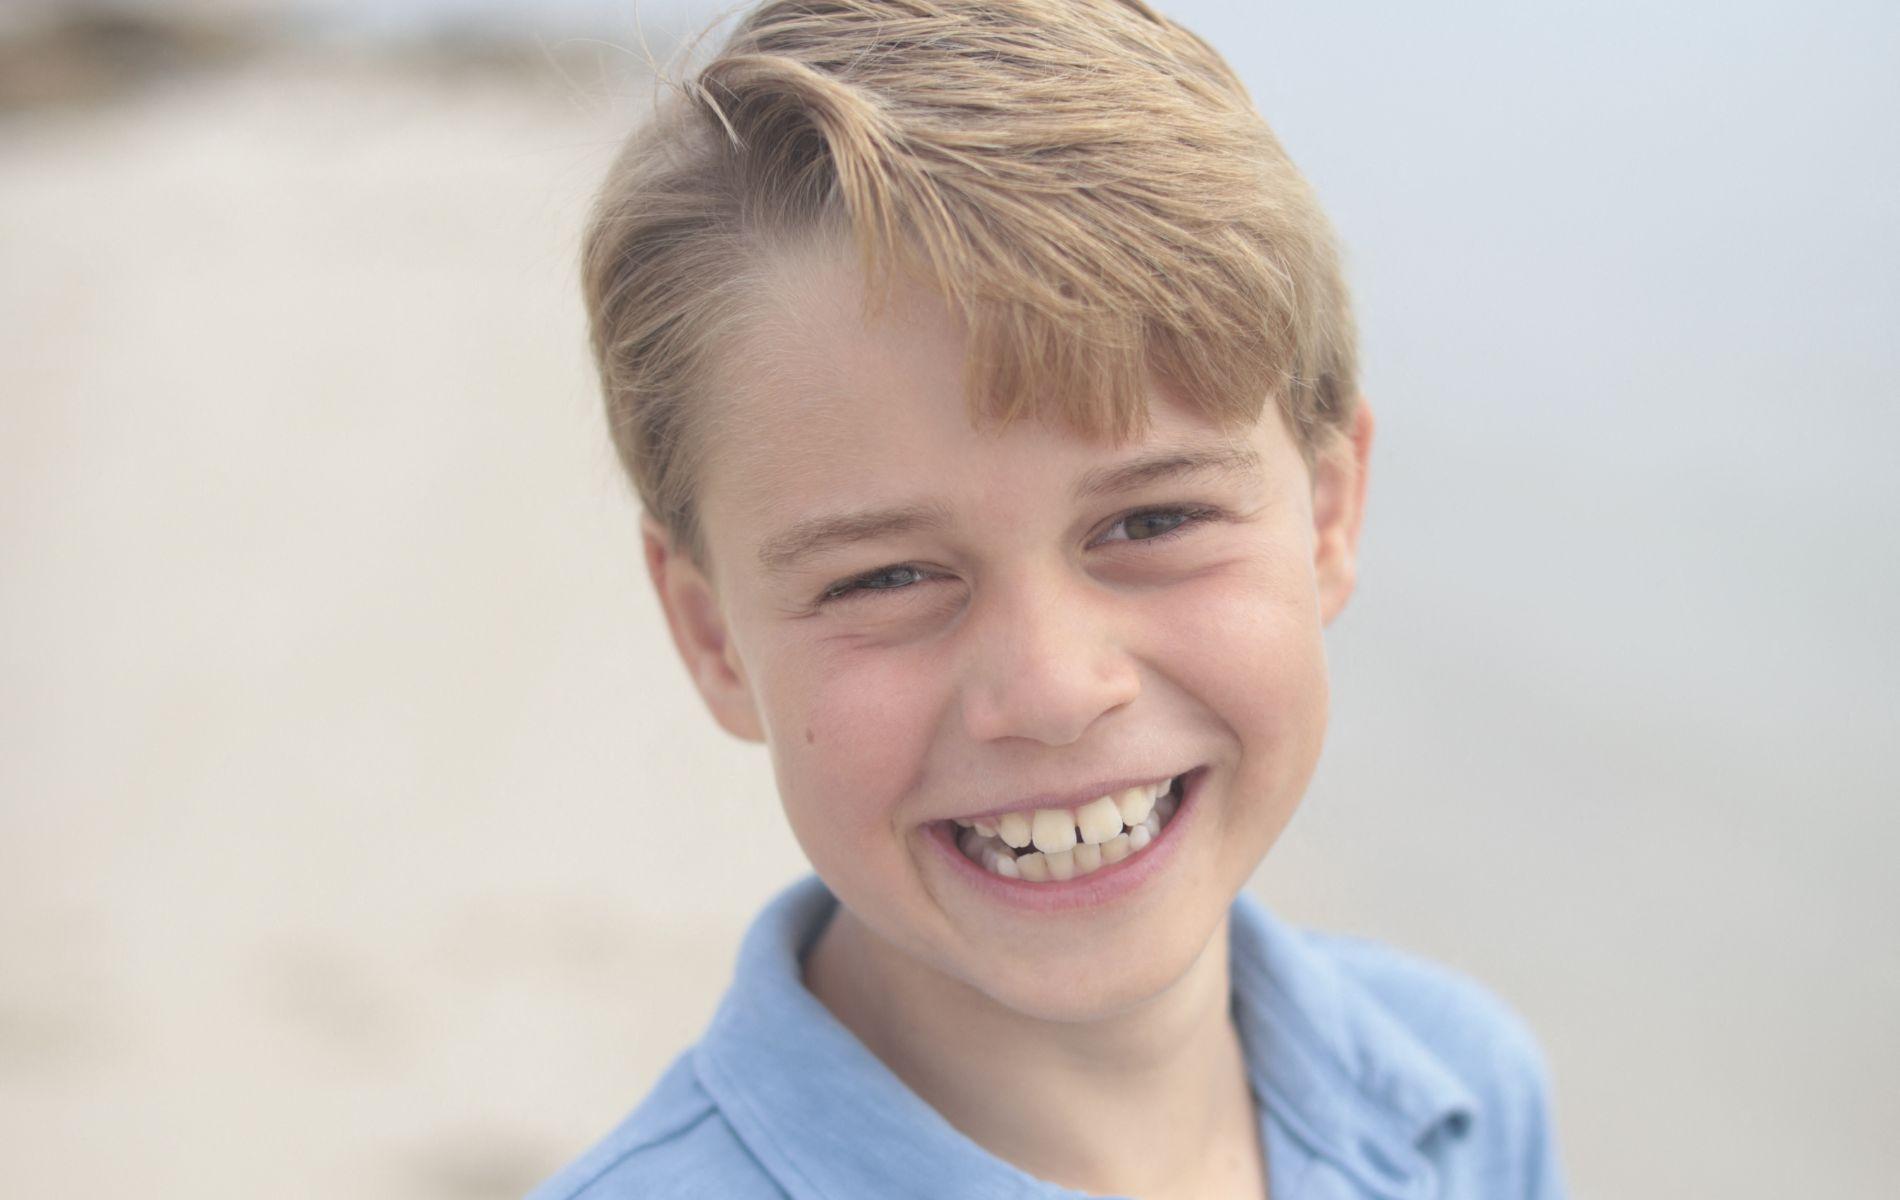 Mèche sur le côté et sourire plein de dents : la photo officielle du prince George pour ses 9 ans